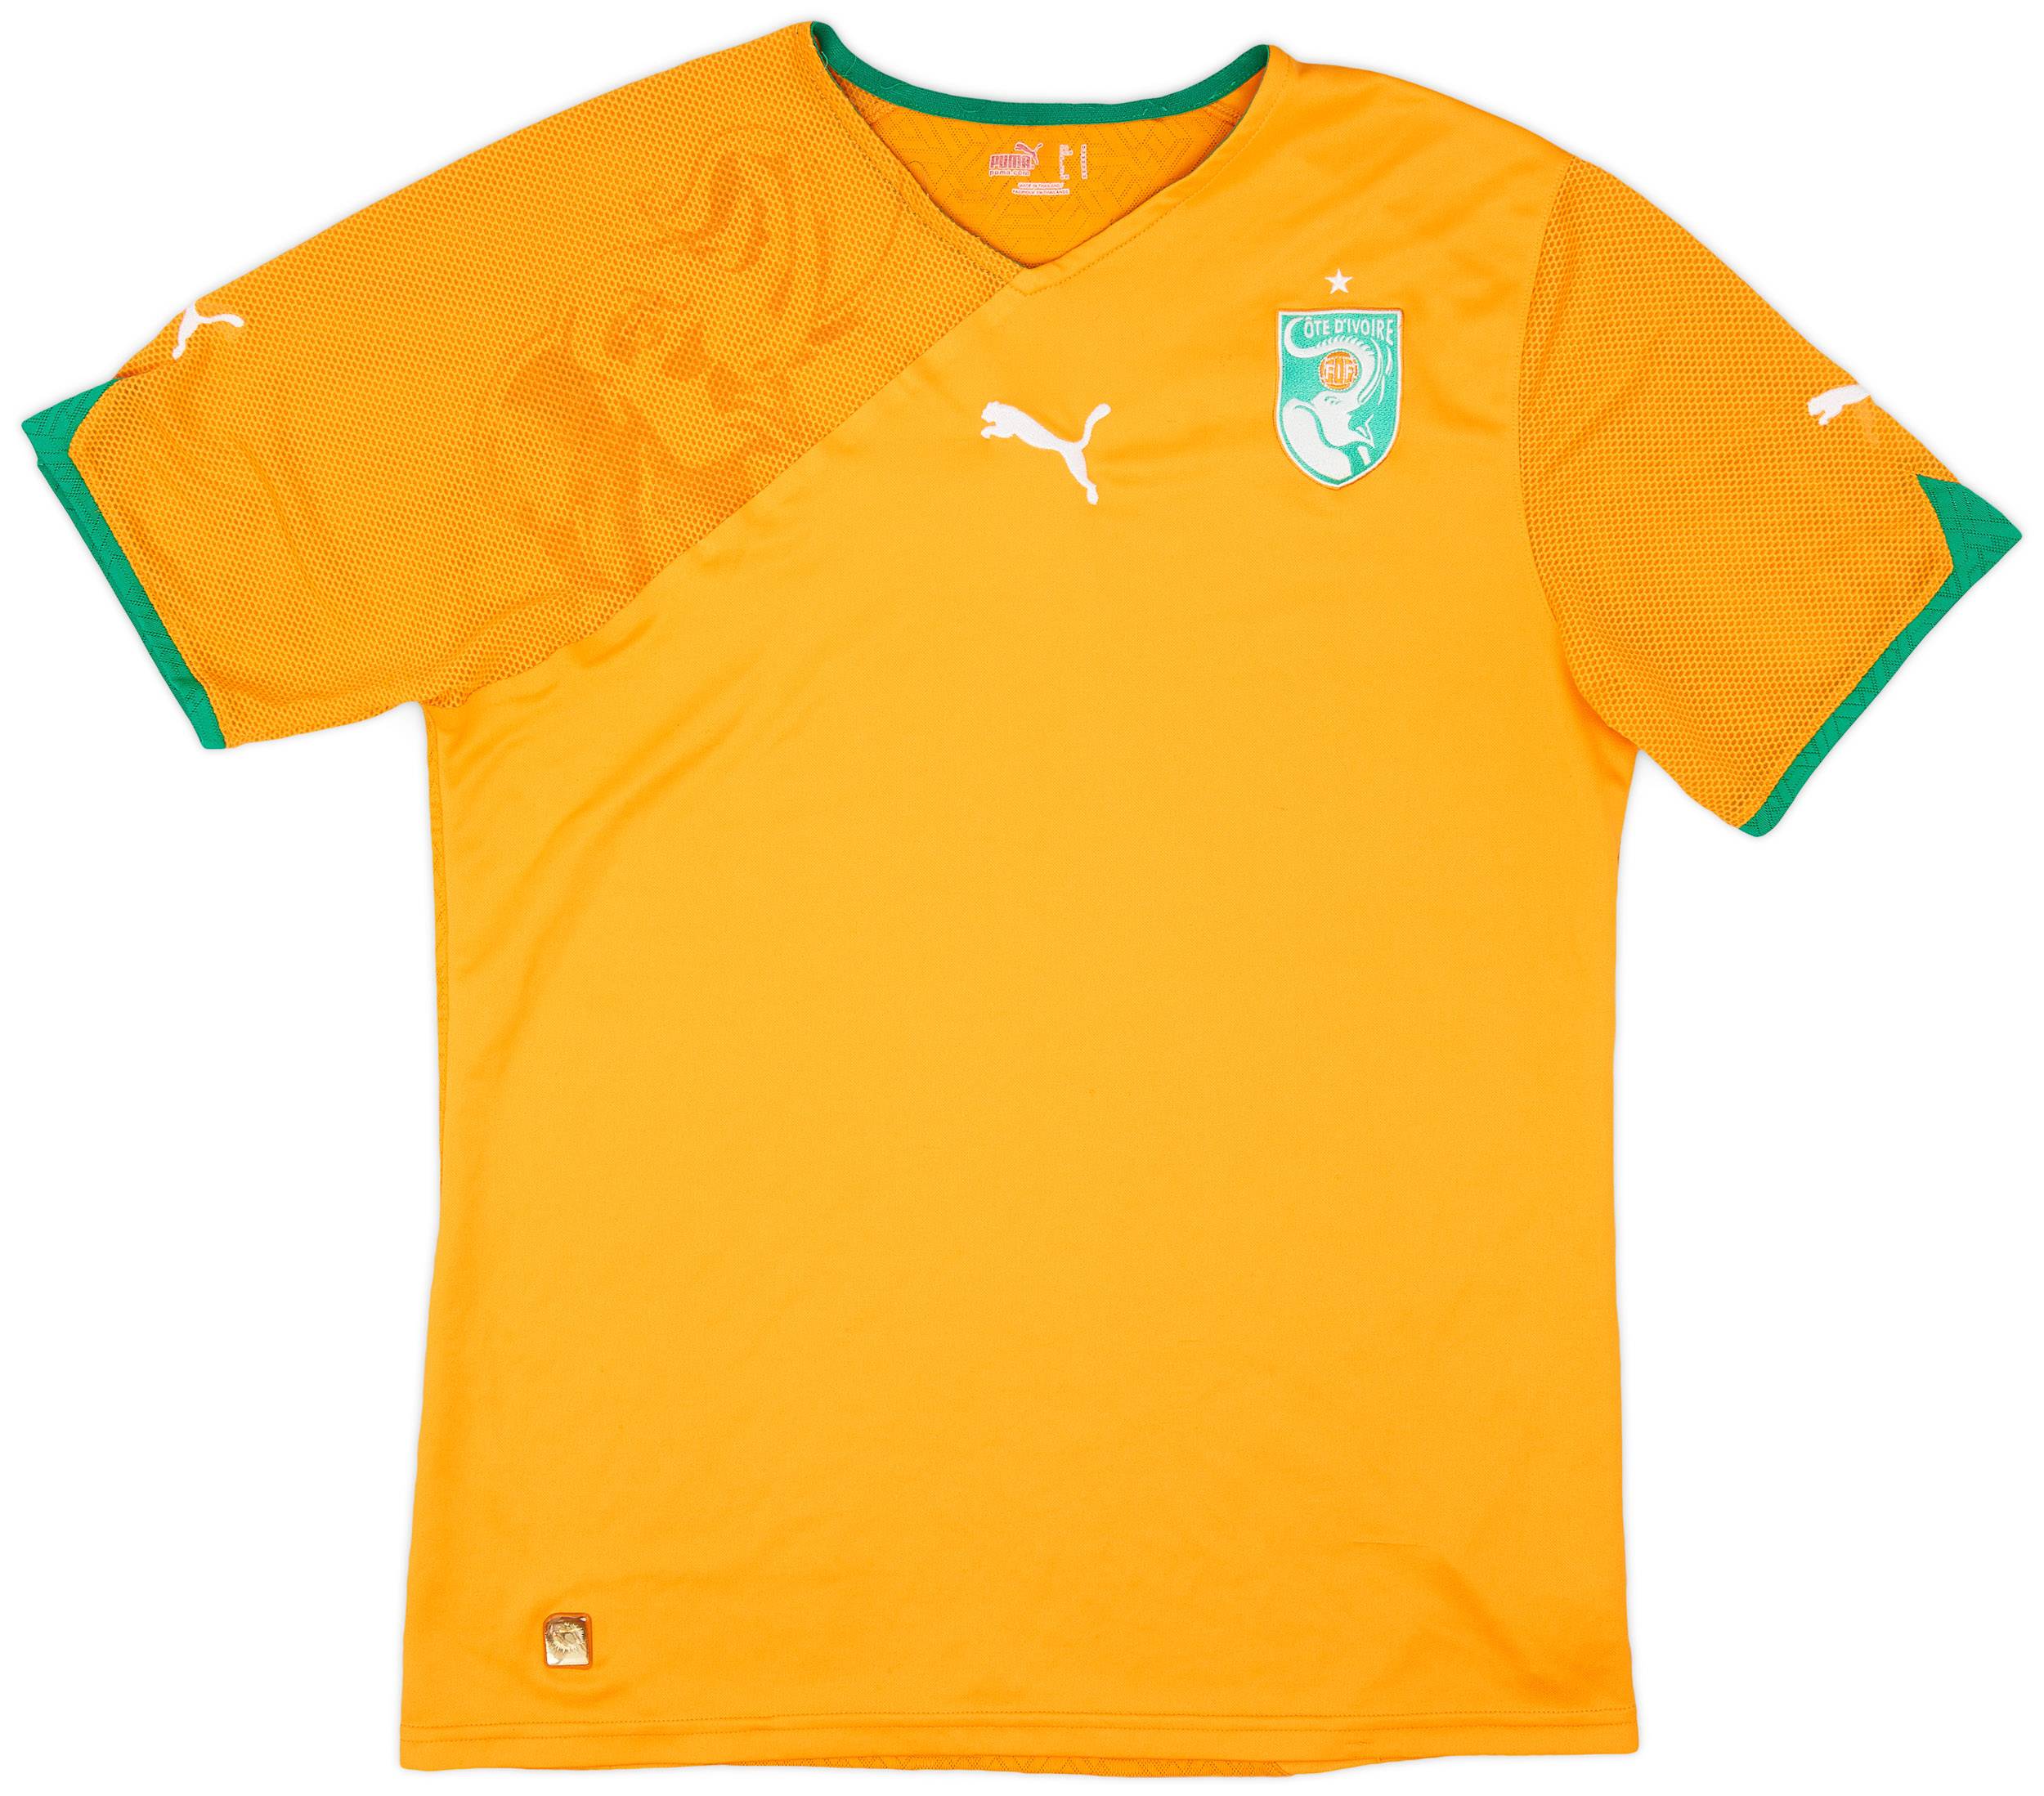 2010-11 Ivory Coast Home Shirt - 8/10 - (M)